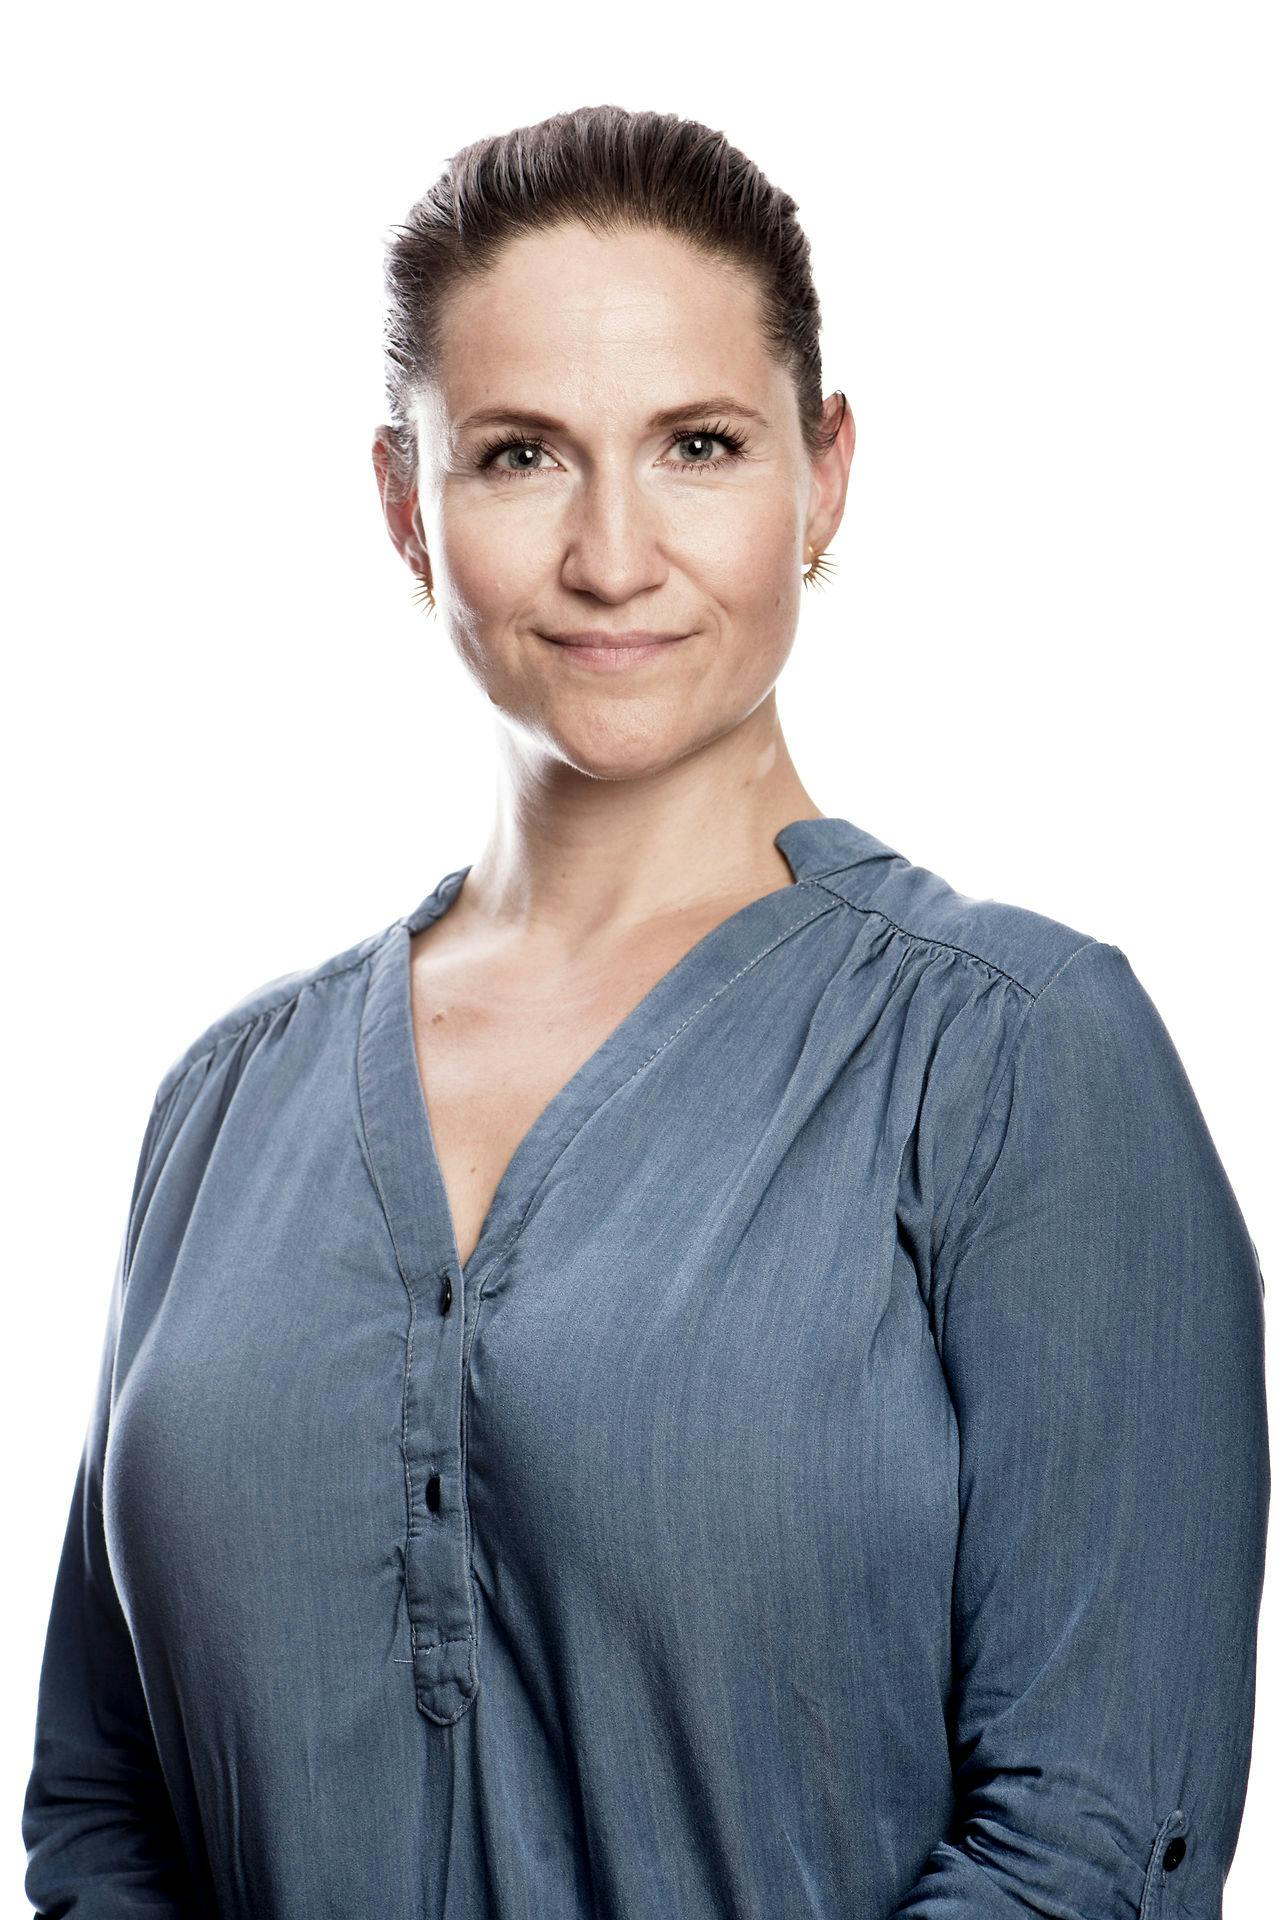 TV 2-værten Gertrud Højlund er her klædt i blåt, men det betyder ikke, hun stemmer på blå blok.